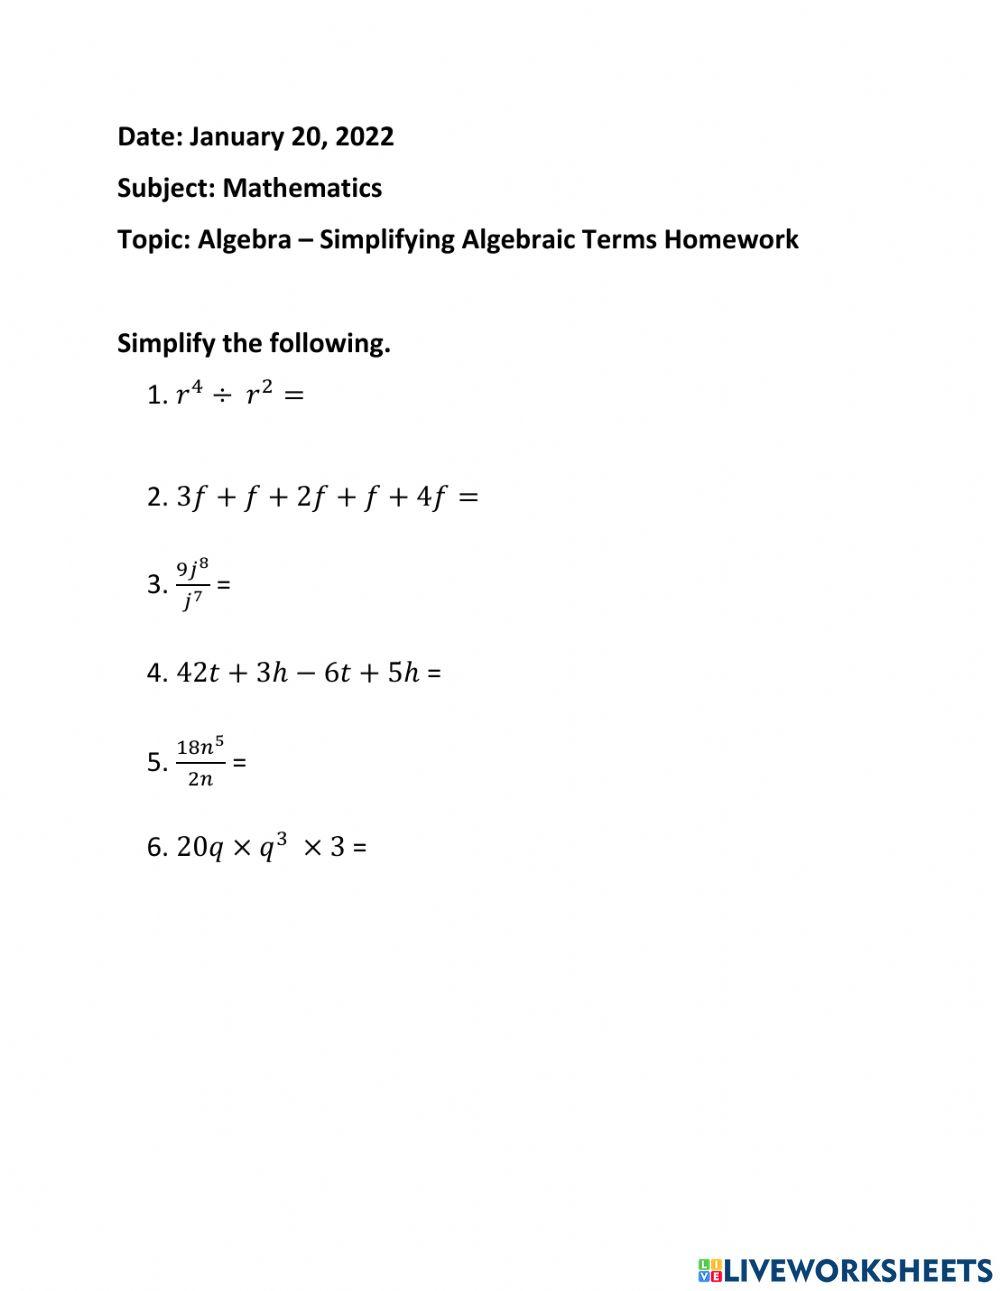 Simplifying Algebraic Expressions Homework